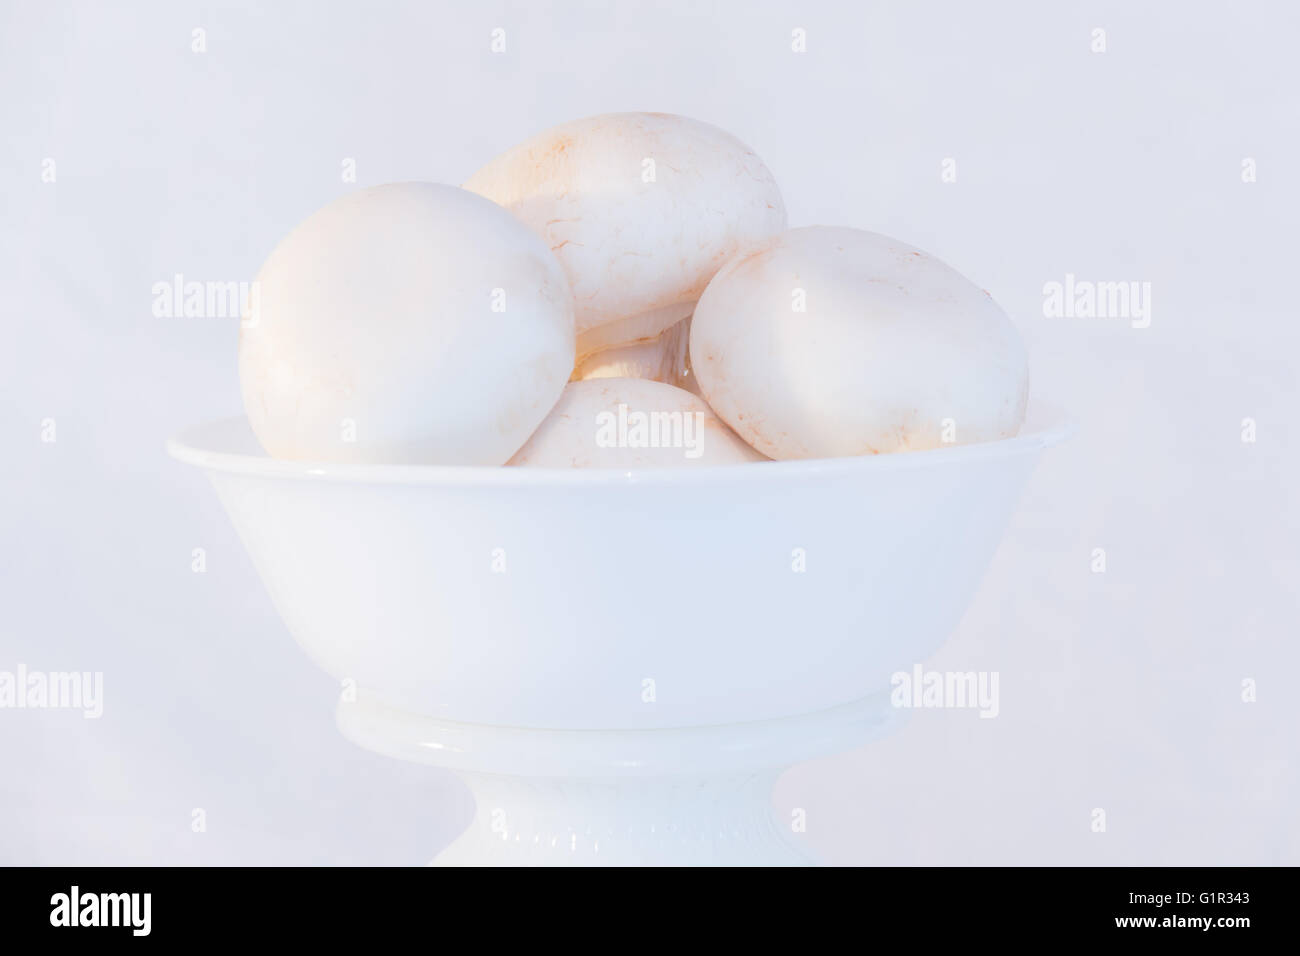 Clave alta imagen de setas blancas en un recipiente blanco Foto de stock